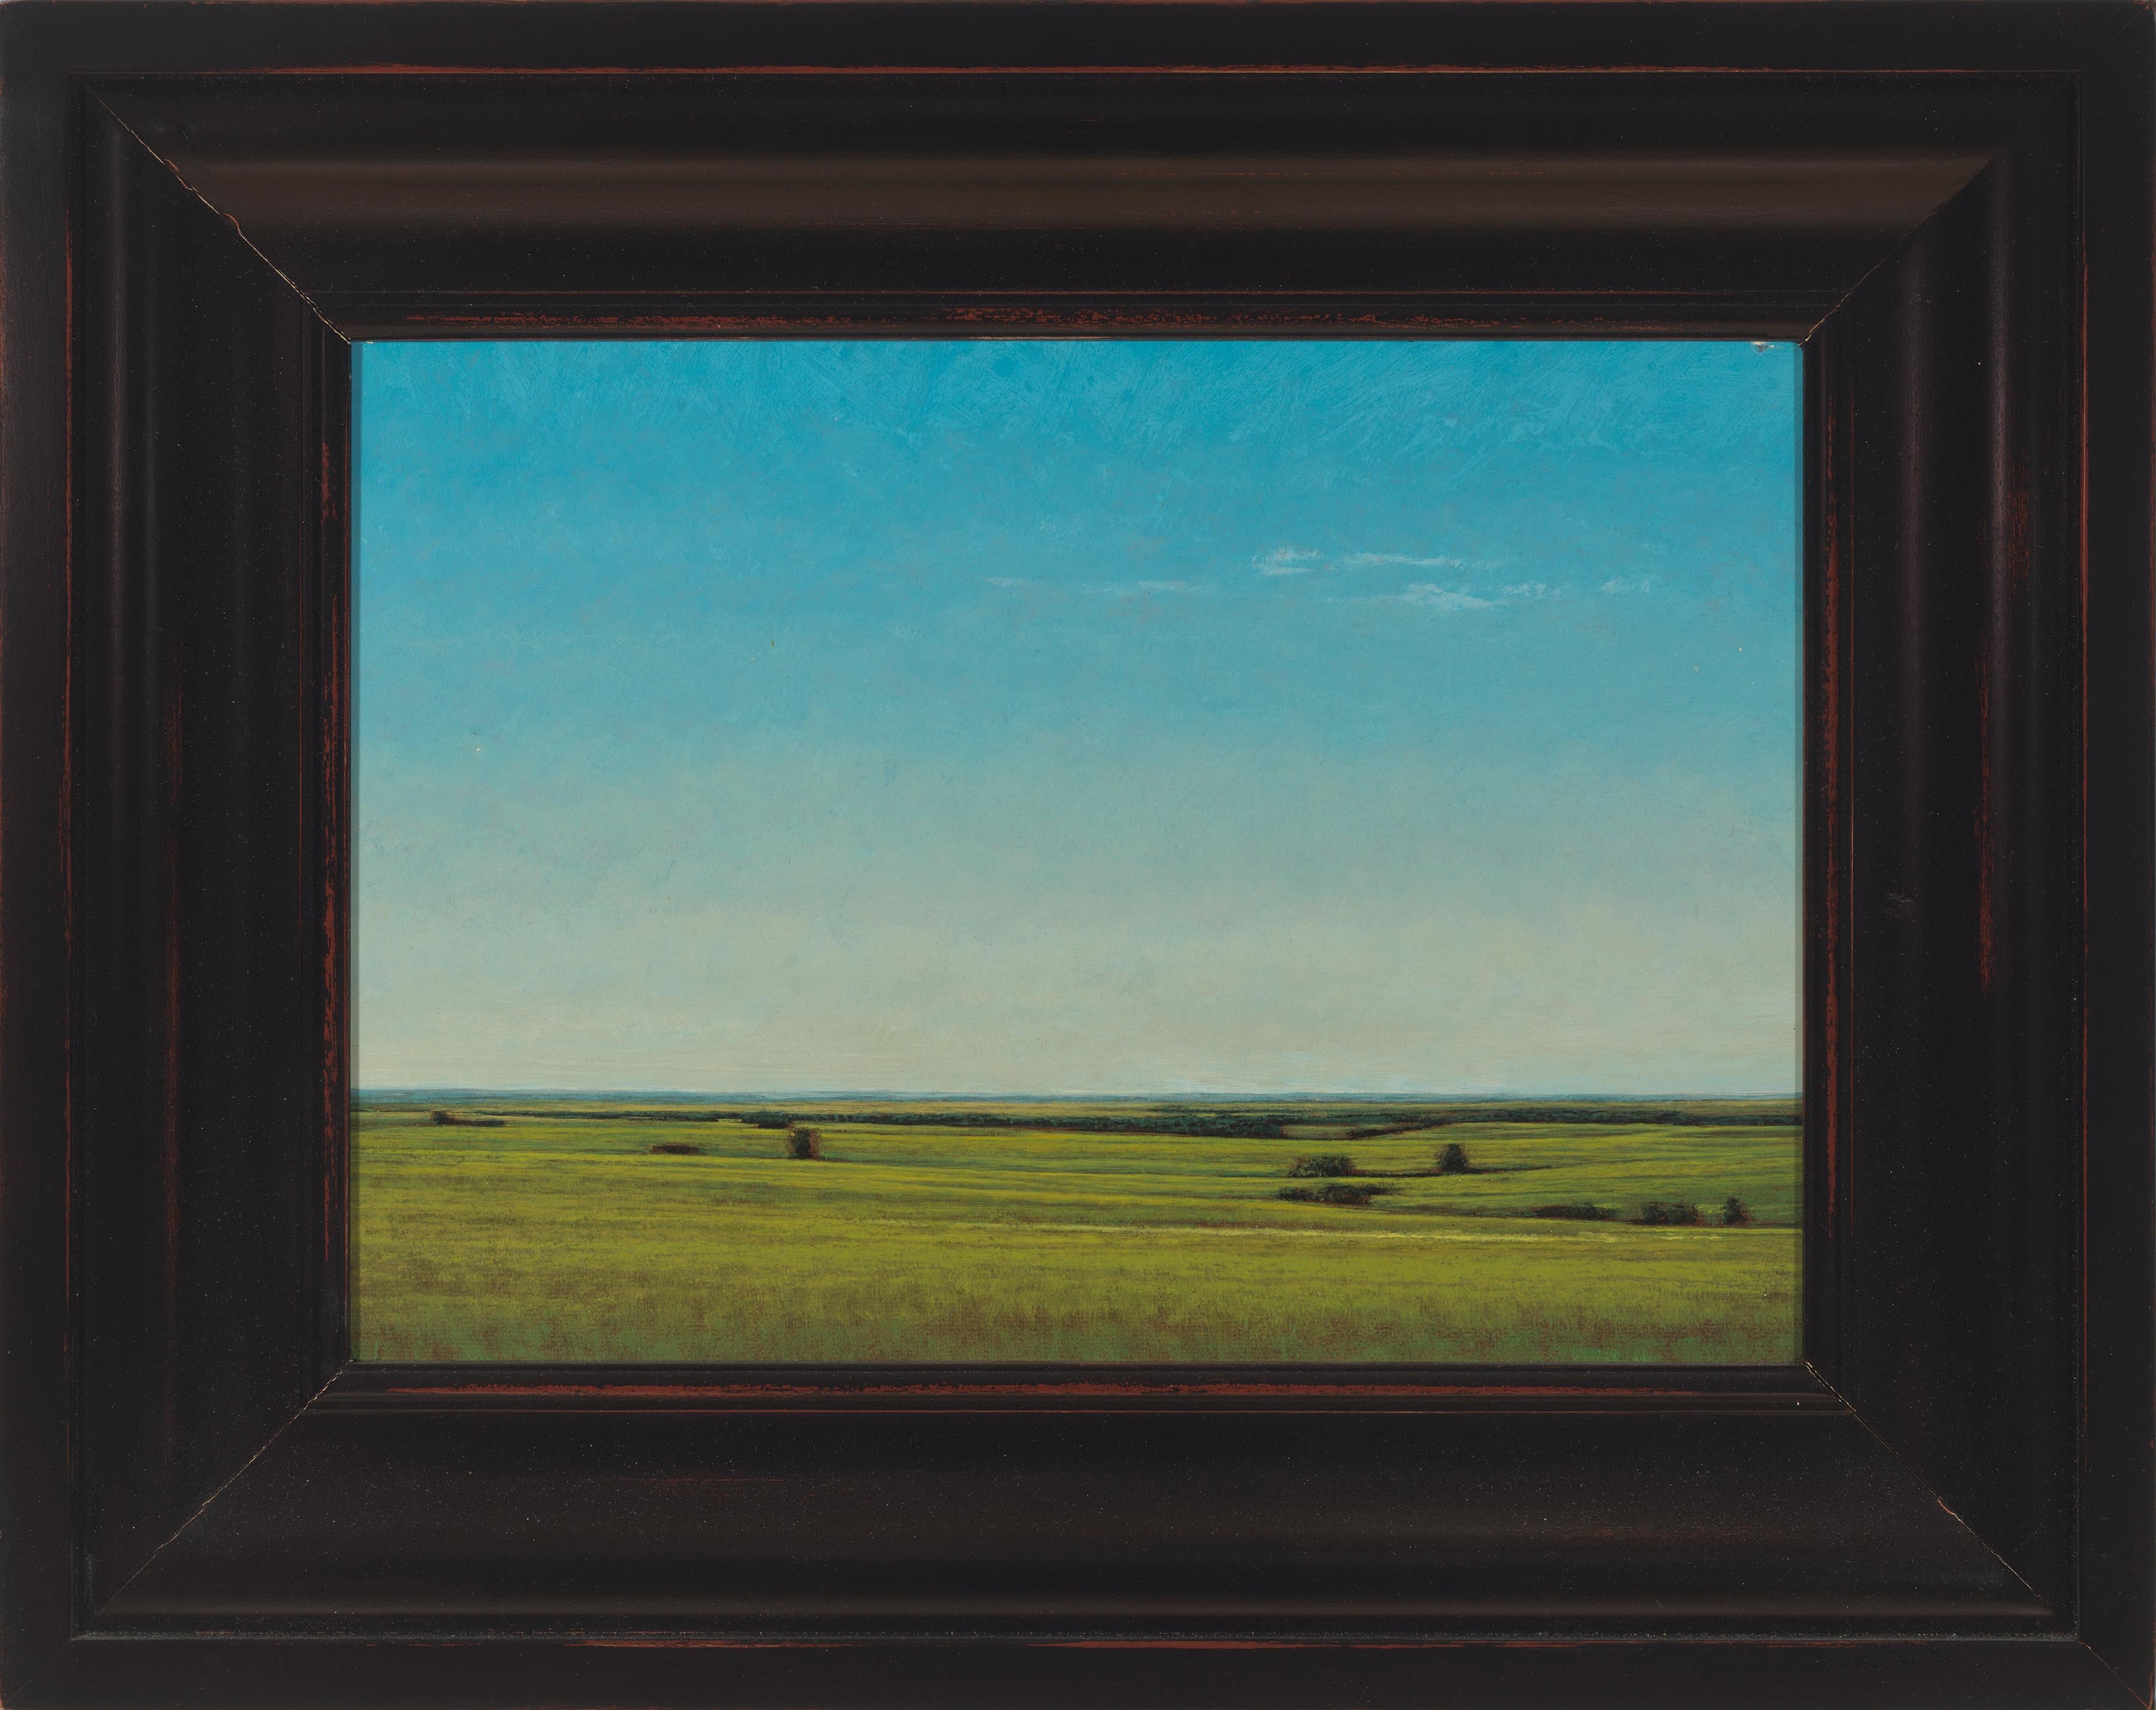 Spätes Nachmittagsabends in der Nähe von Salina, Kansas, heitere Landschaft mit üppigen Grüntönen und Blautönen (Zeitgenössisch), Painting, von Jeff Aeling